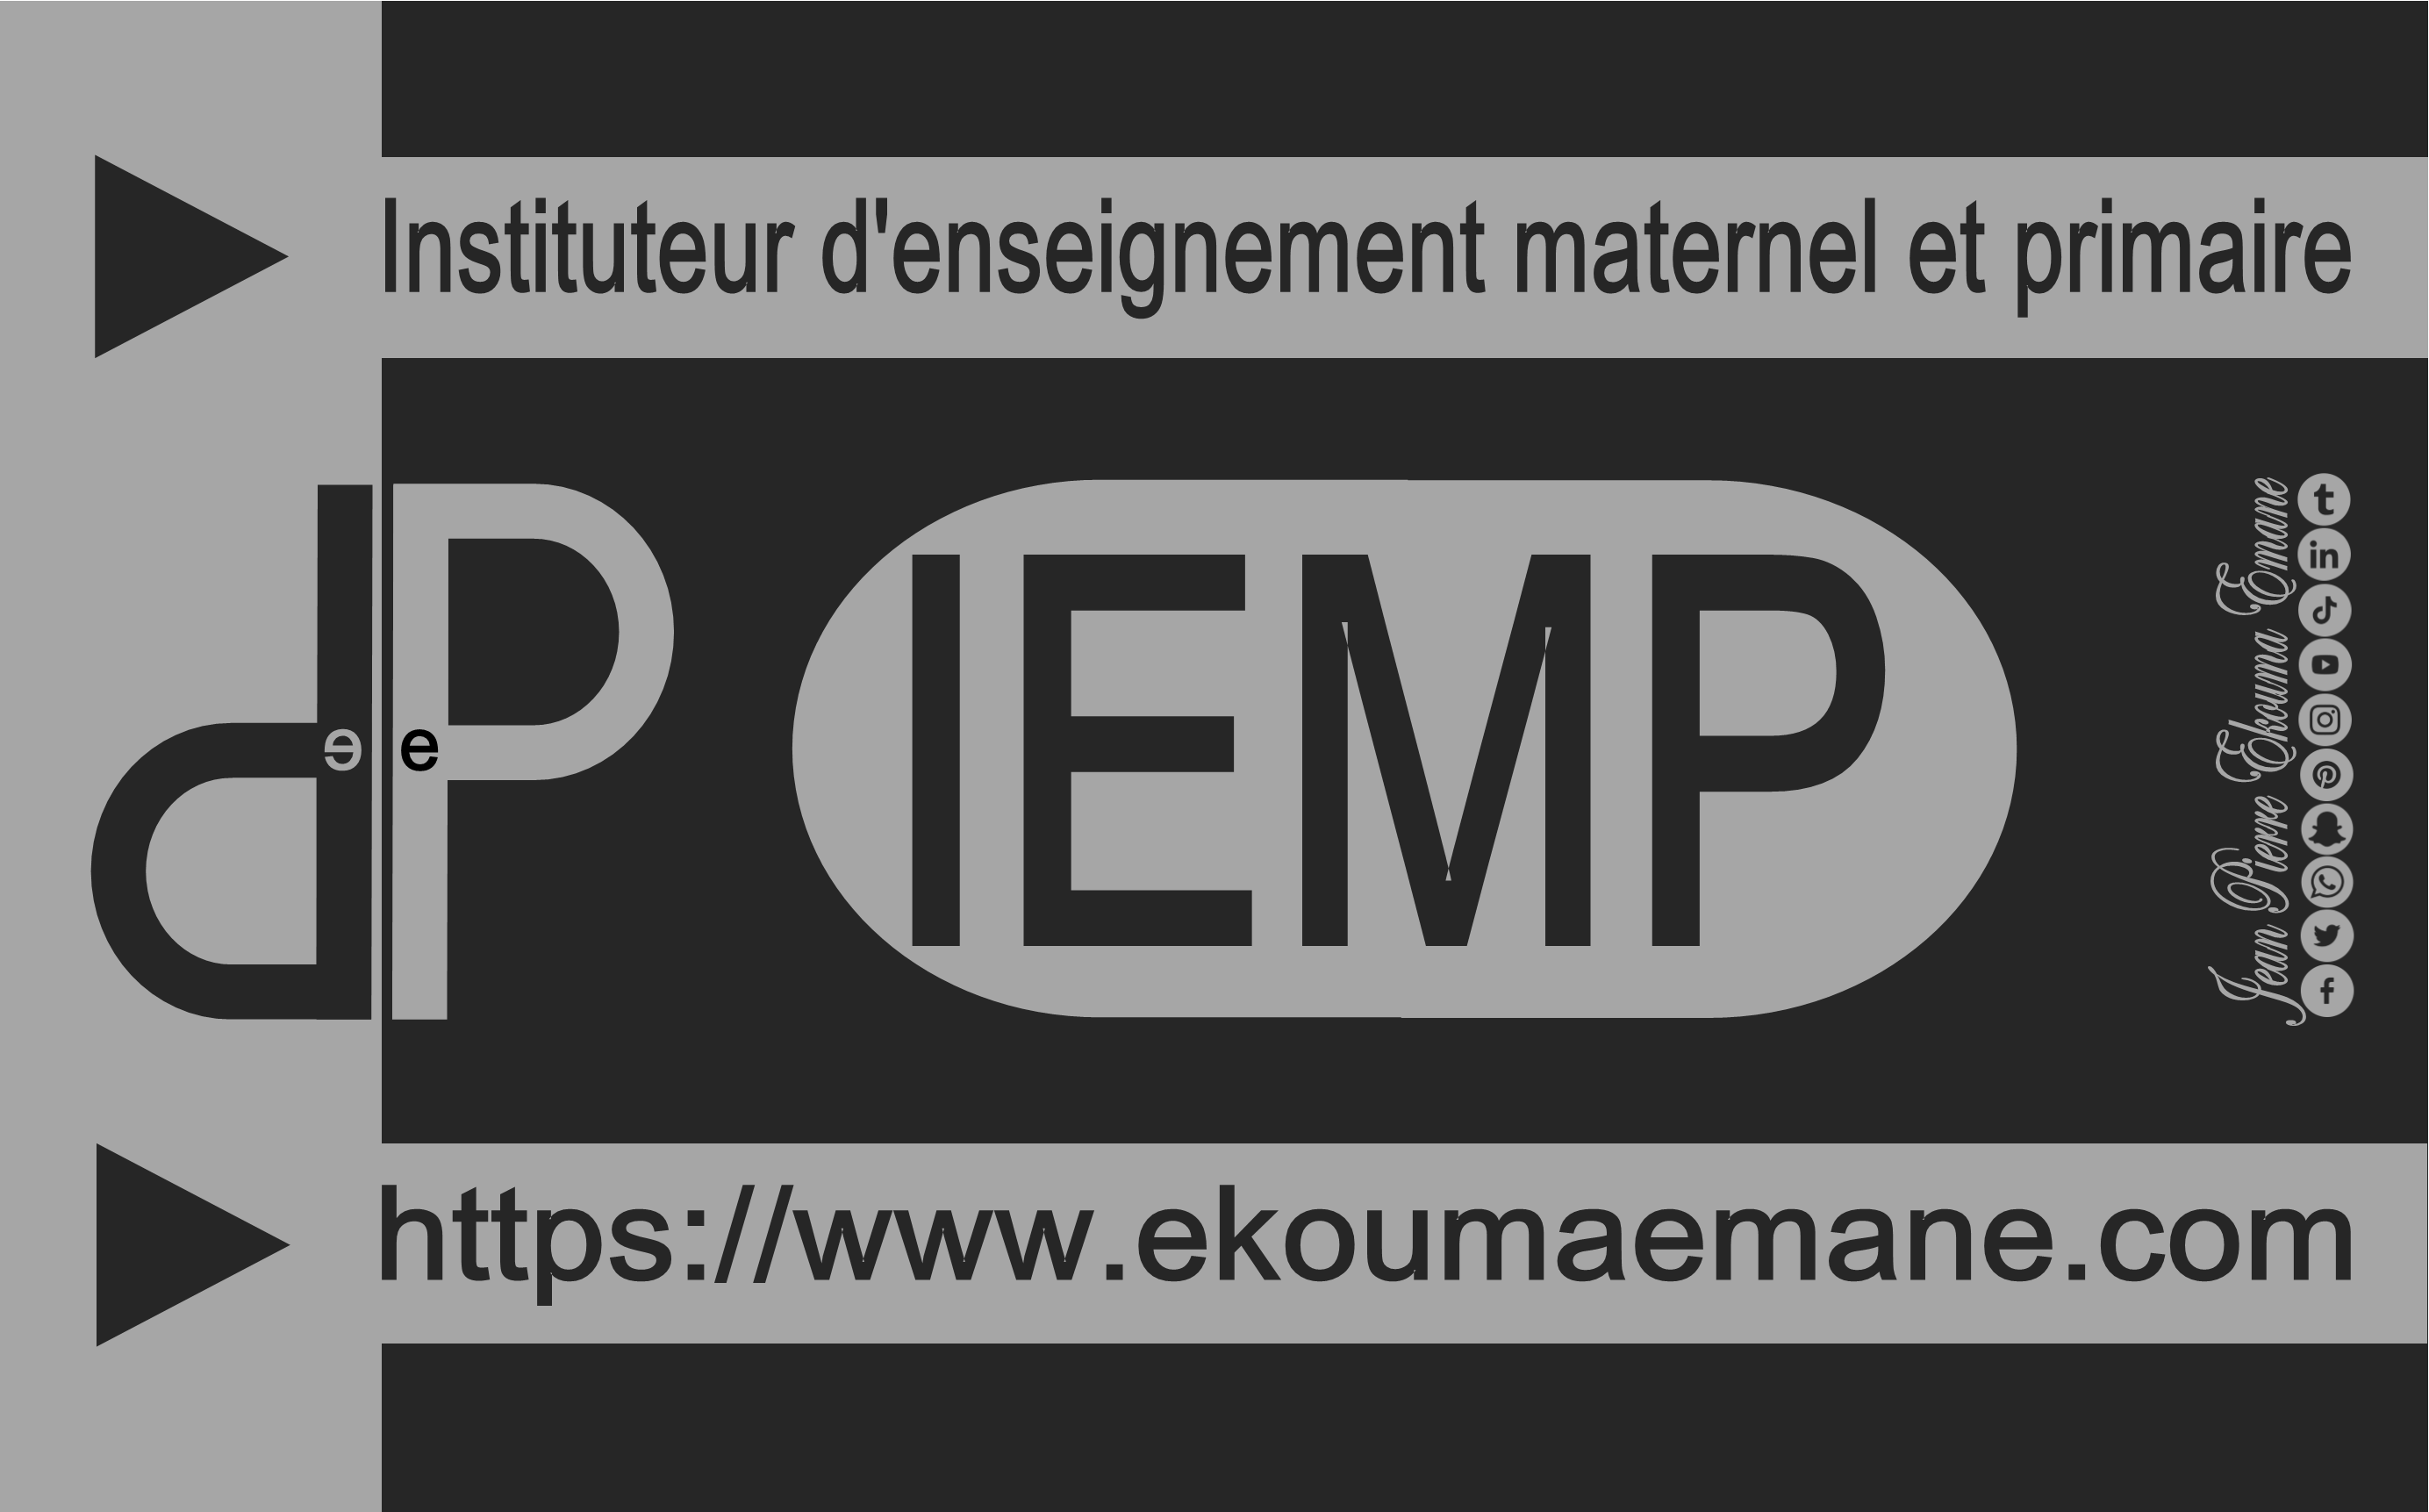 Instituteur de l'enseignement maternel et primaire et (IEMP)